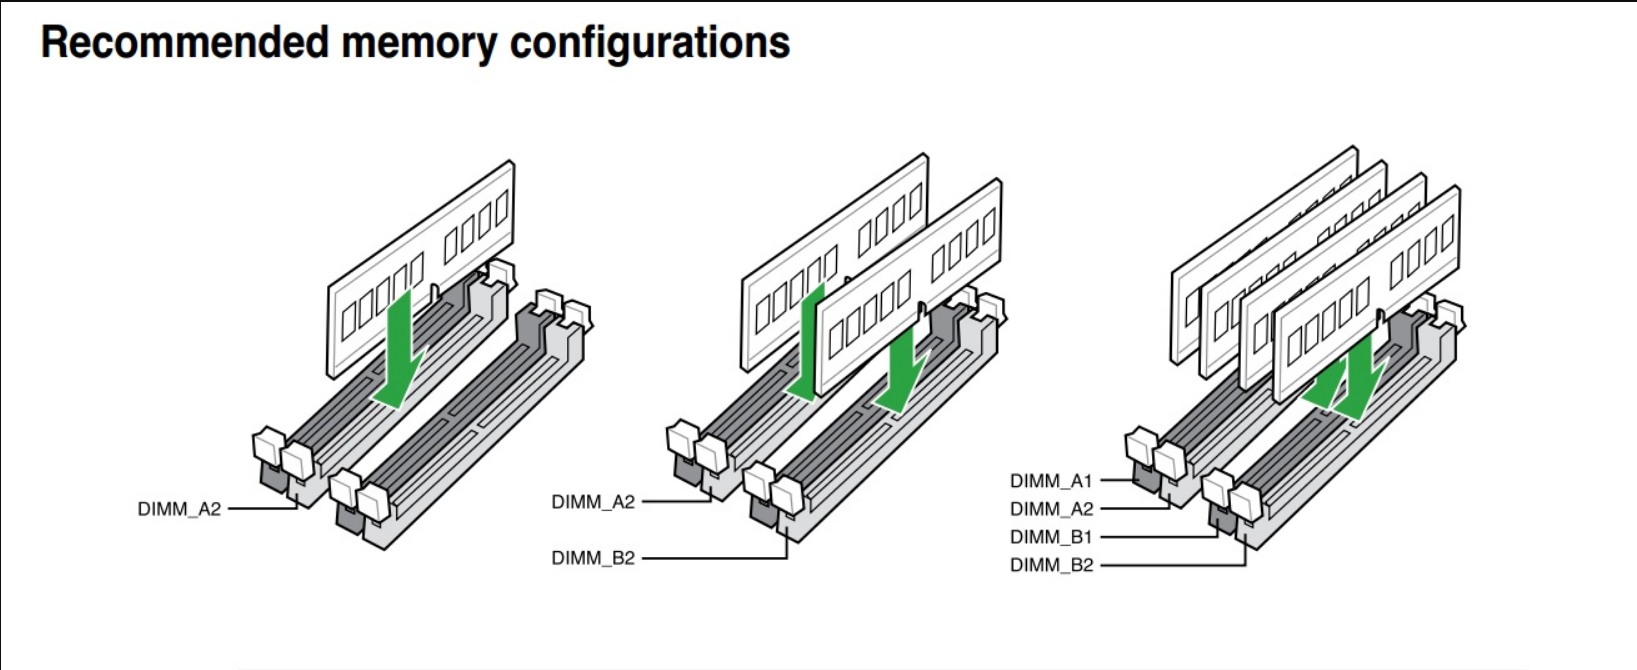 4 канал память. Как поставить 3 планки оперативной памяти ddr3. Как правильно ставить планки оперативной памяти ddr3. Двухканальный режим оперативной памяти MS-7390. Двухканальный режим оперативной памяти ddr3.